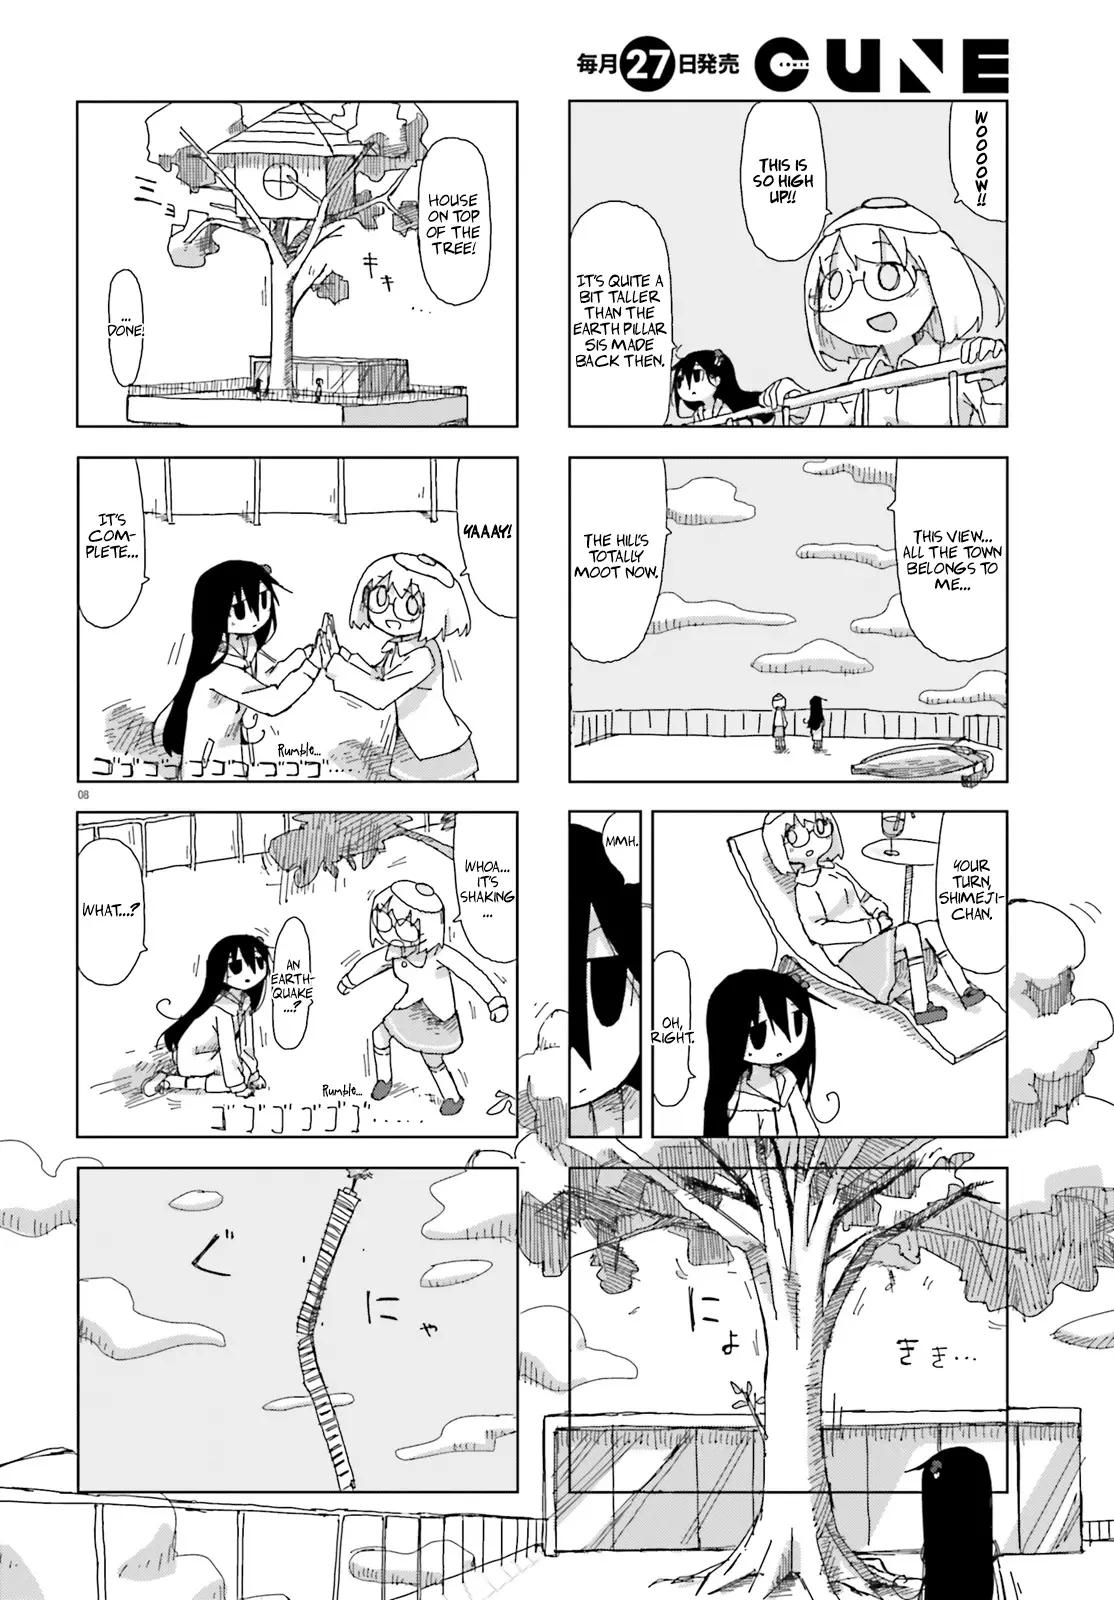 Shimeji Simulation - 31 page 8-8085e2b8